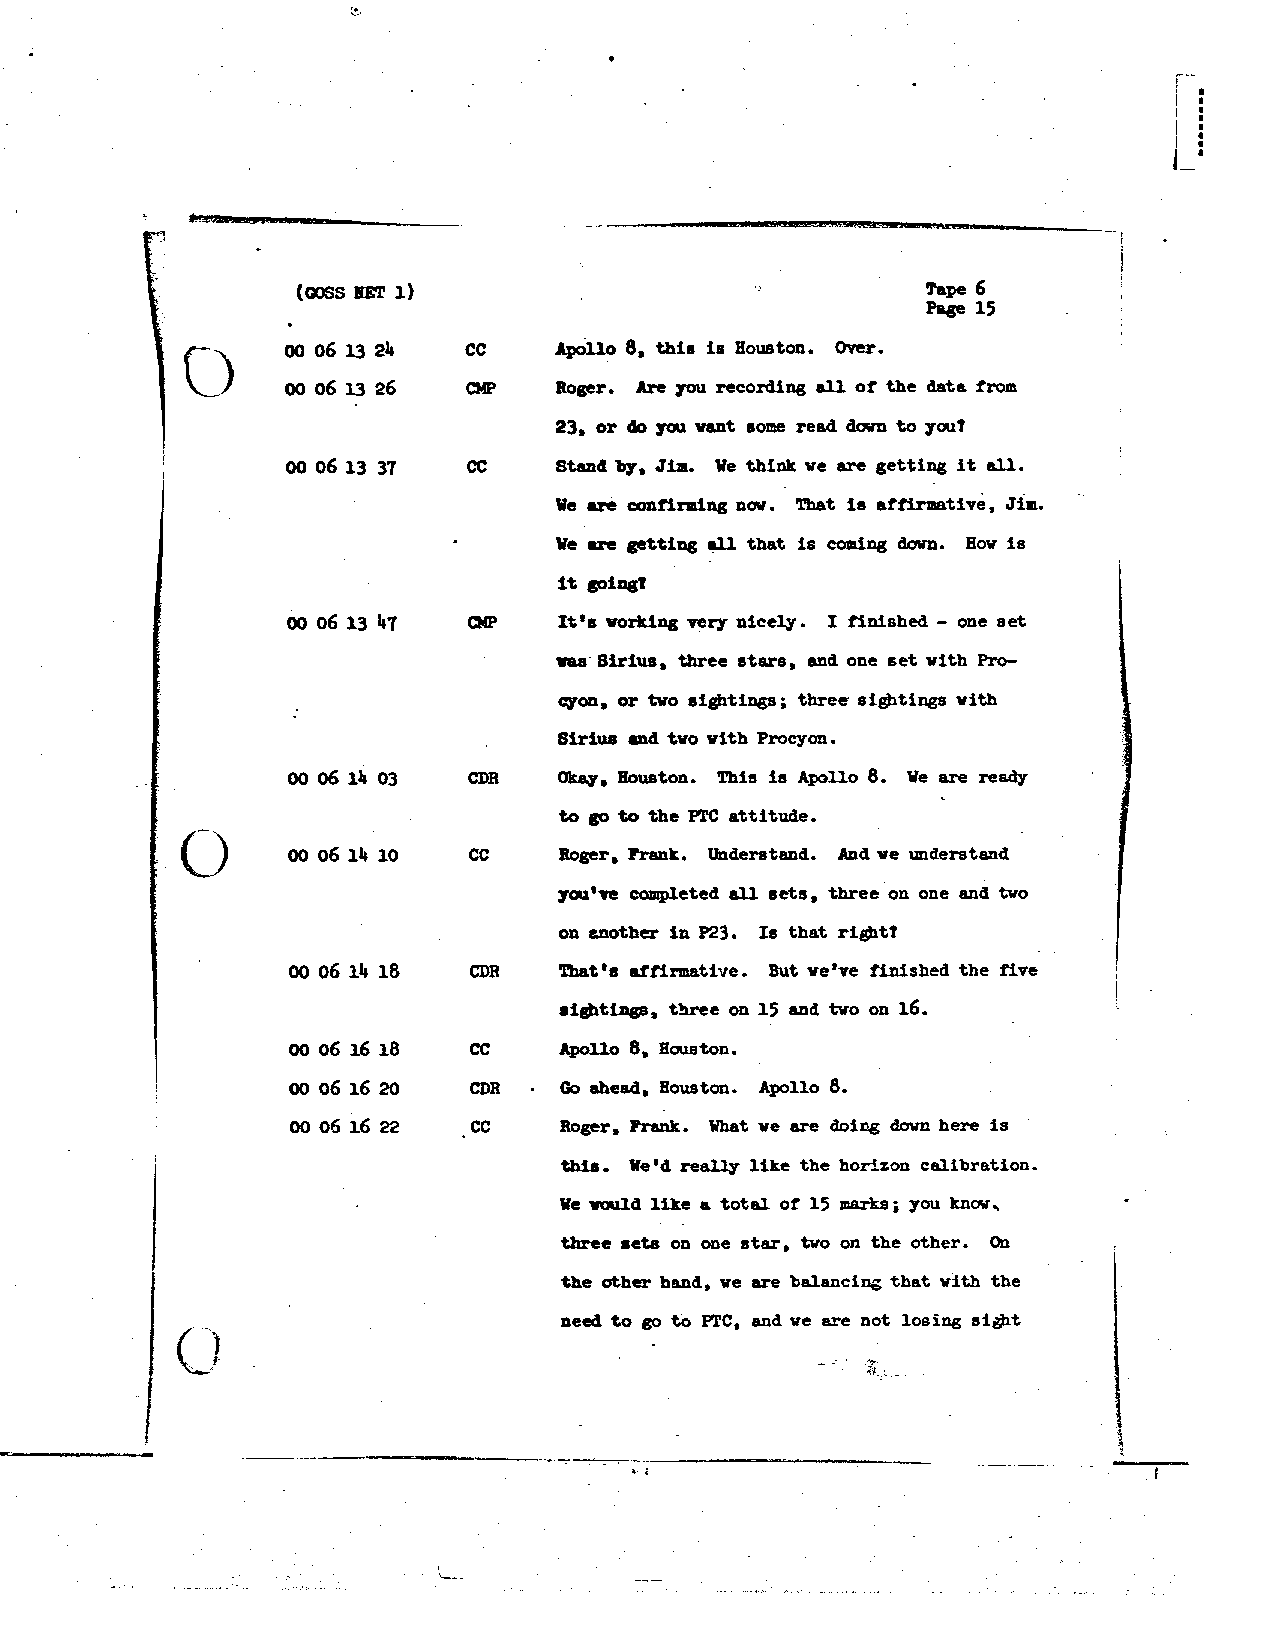 Page 61 of Apollo 8’s original transcript